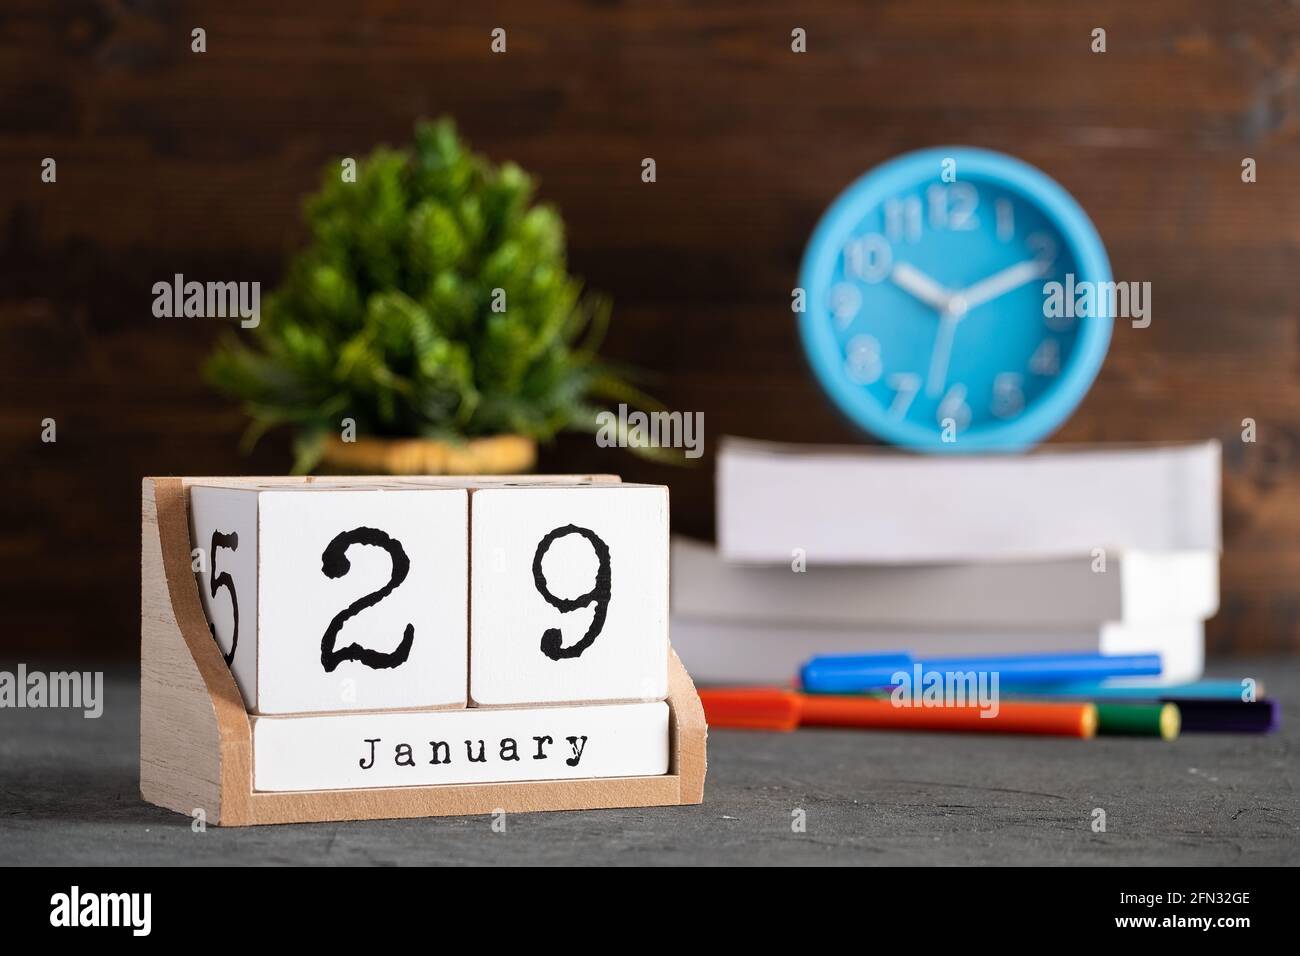 29 janvier. Janvier 29 calendrier cube en bois avec des objets flous sur fond. Banque D'Images